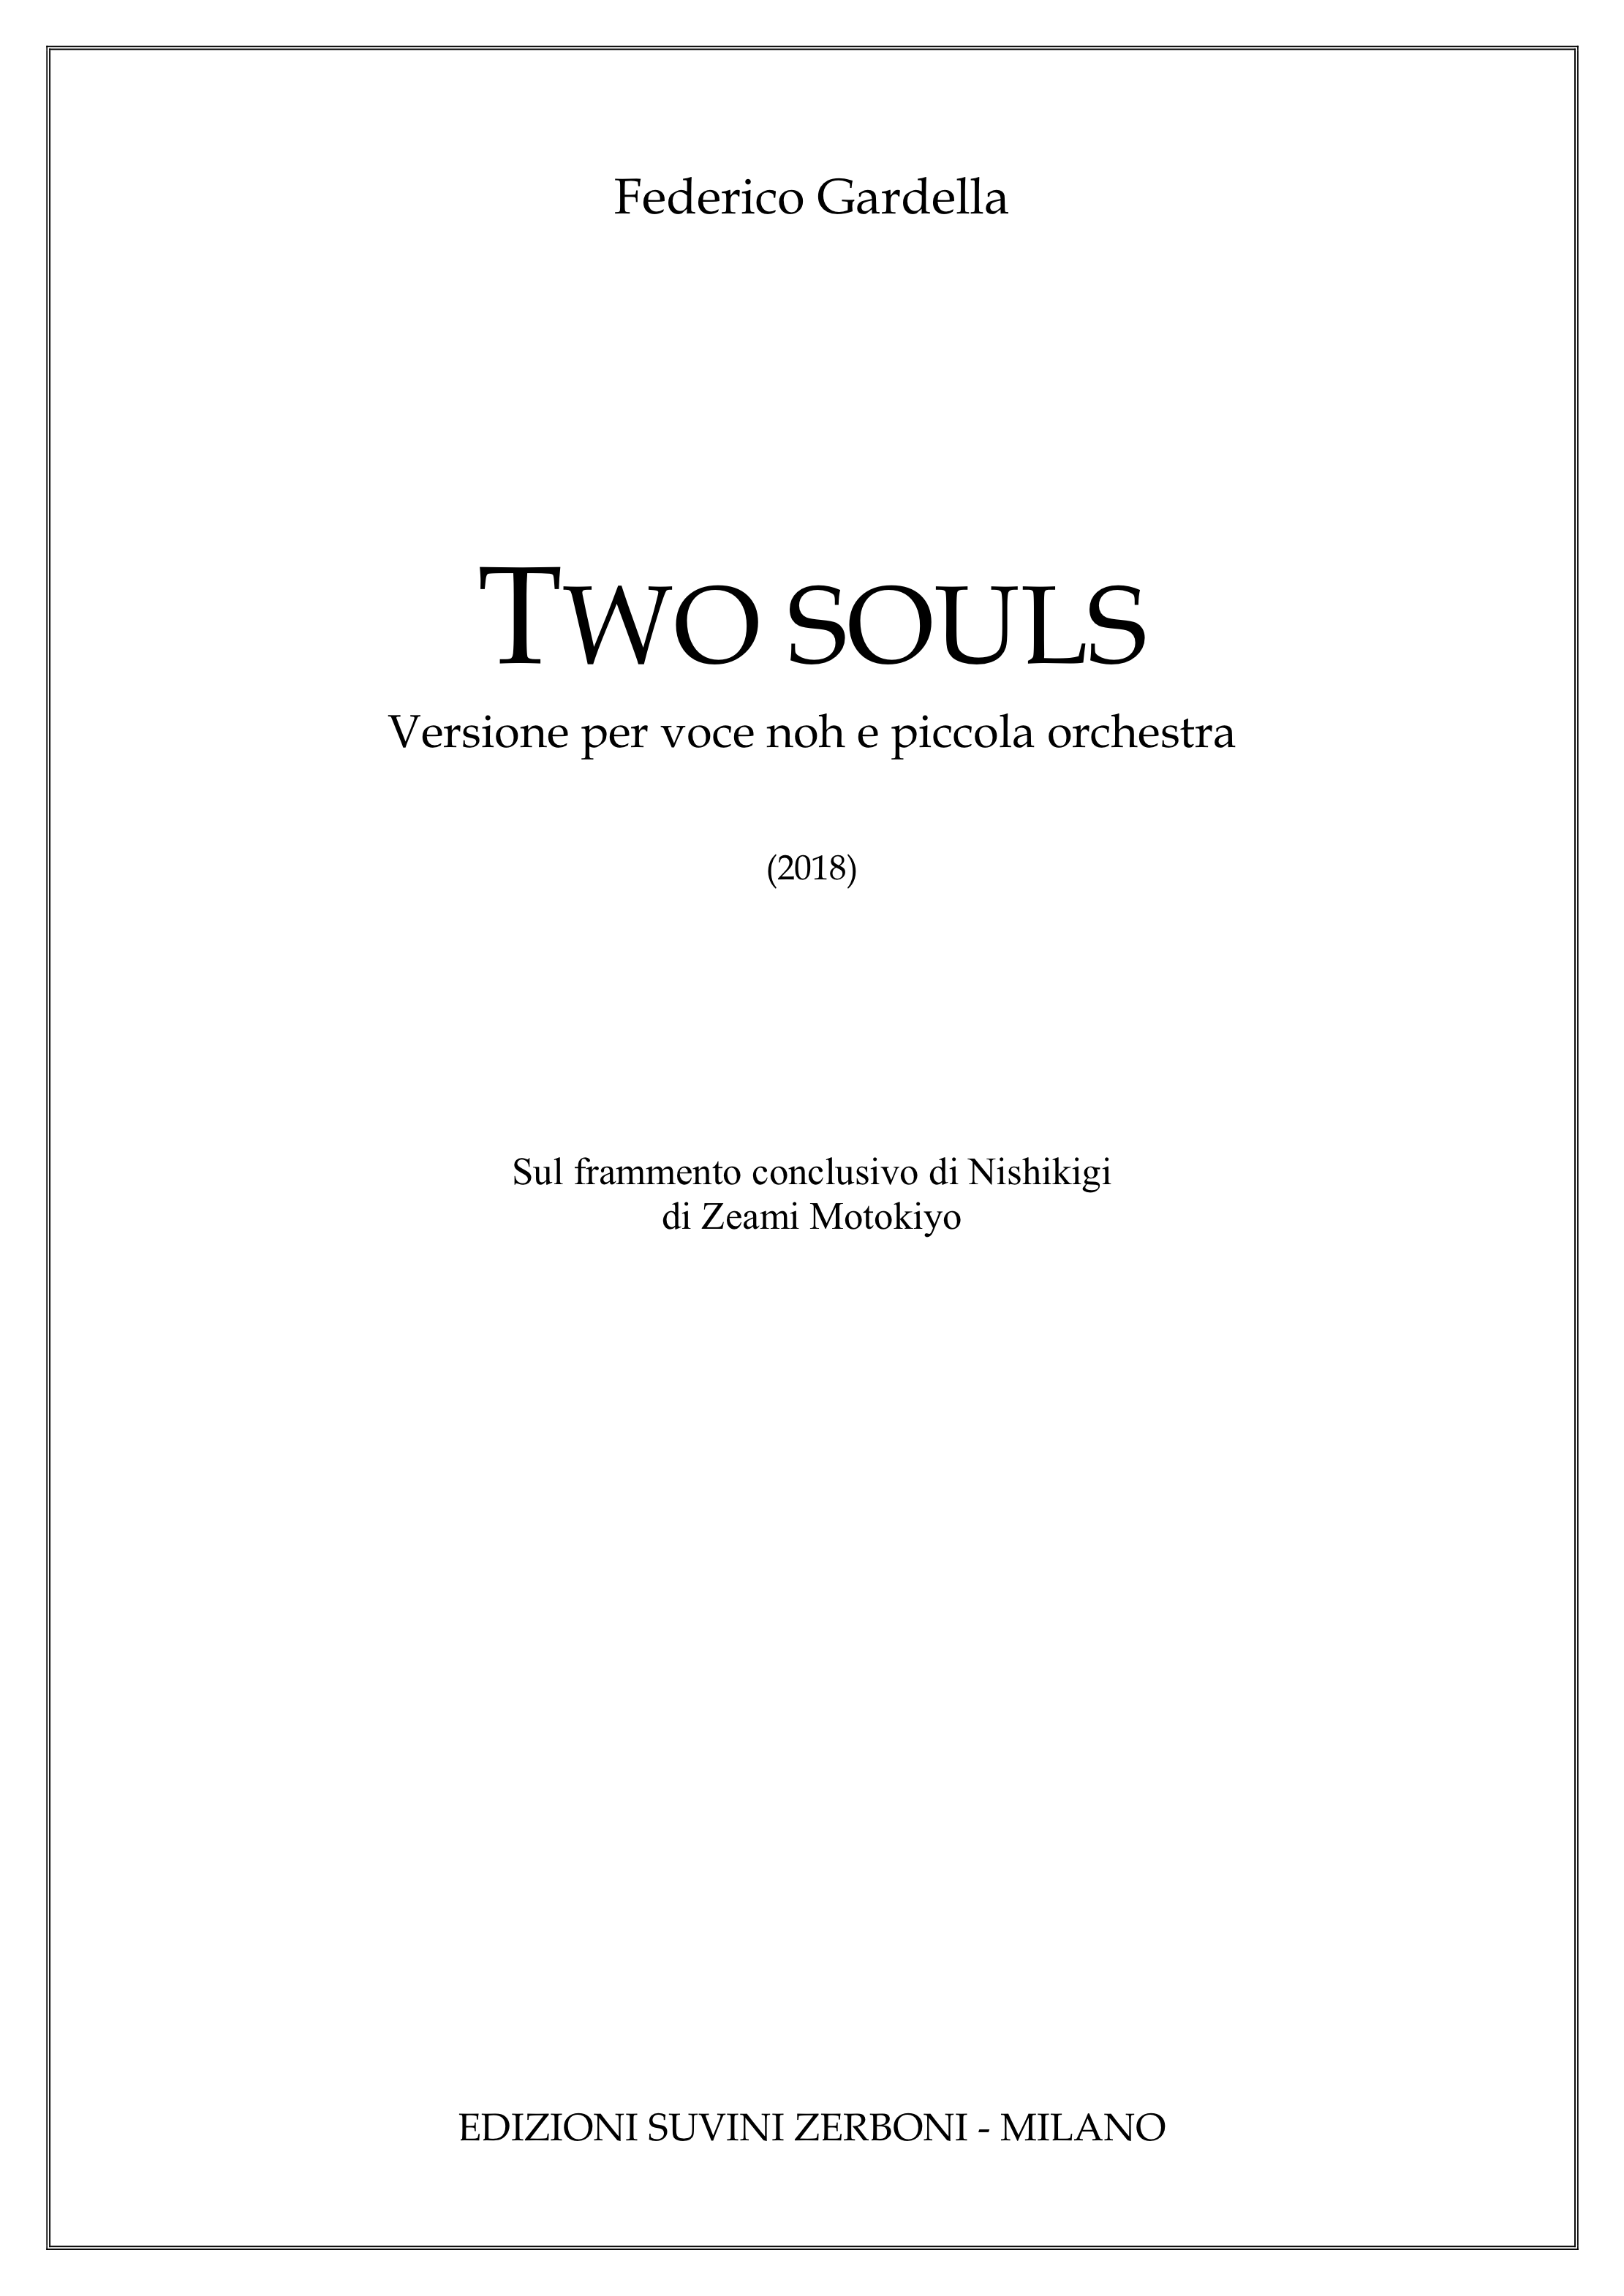 Two Souls_Gardella_per voce noh e piccola orchestra 1